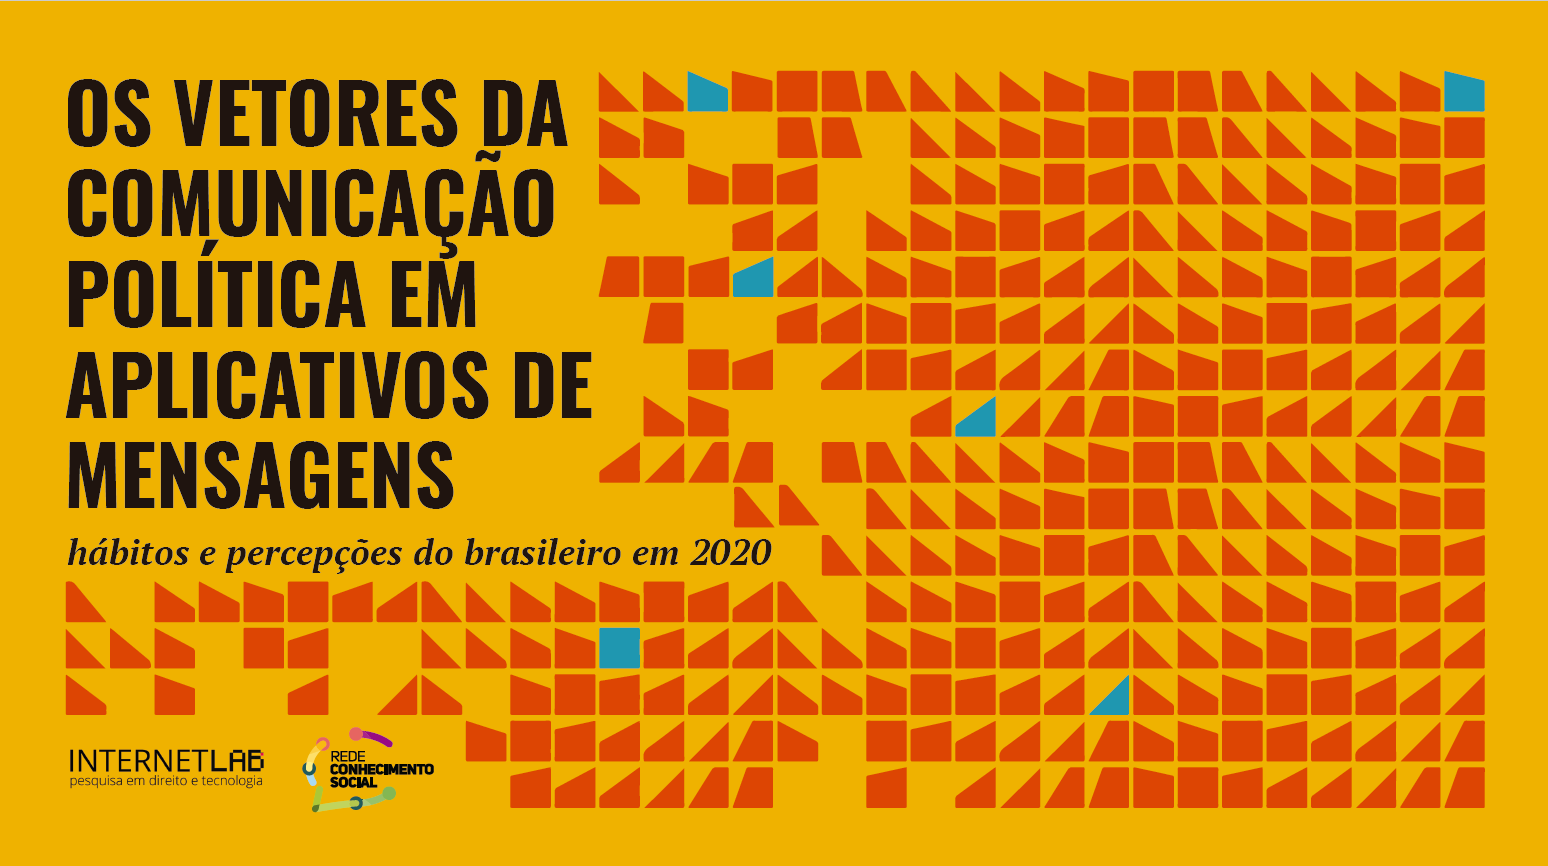 Imagem com fundo amarelo e ilustrações geométricas em vermlho com texto escrito: "Os vetores da comunicação política em aplicativos de mensagens: hábitos e percepções do brasileiro em 2020"